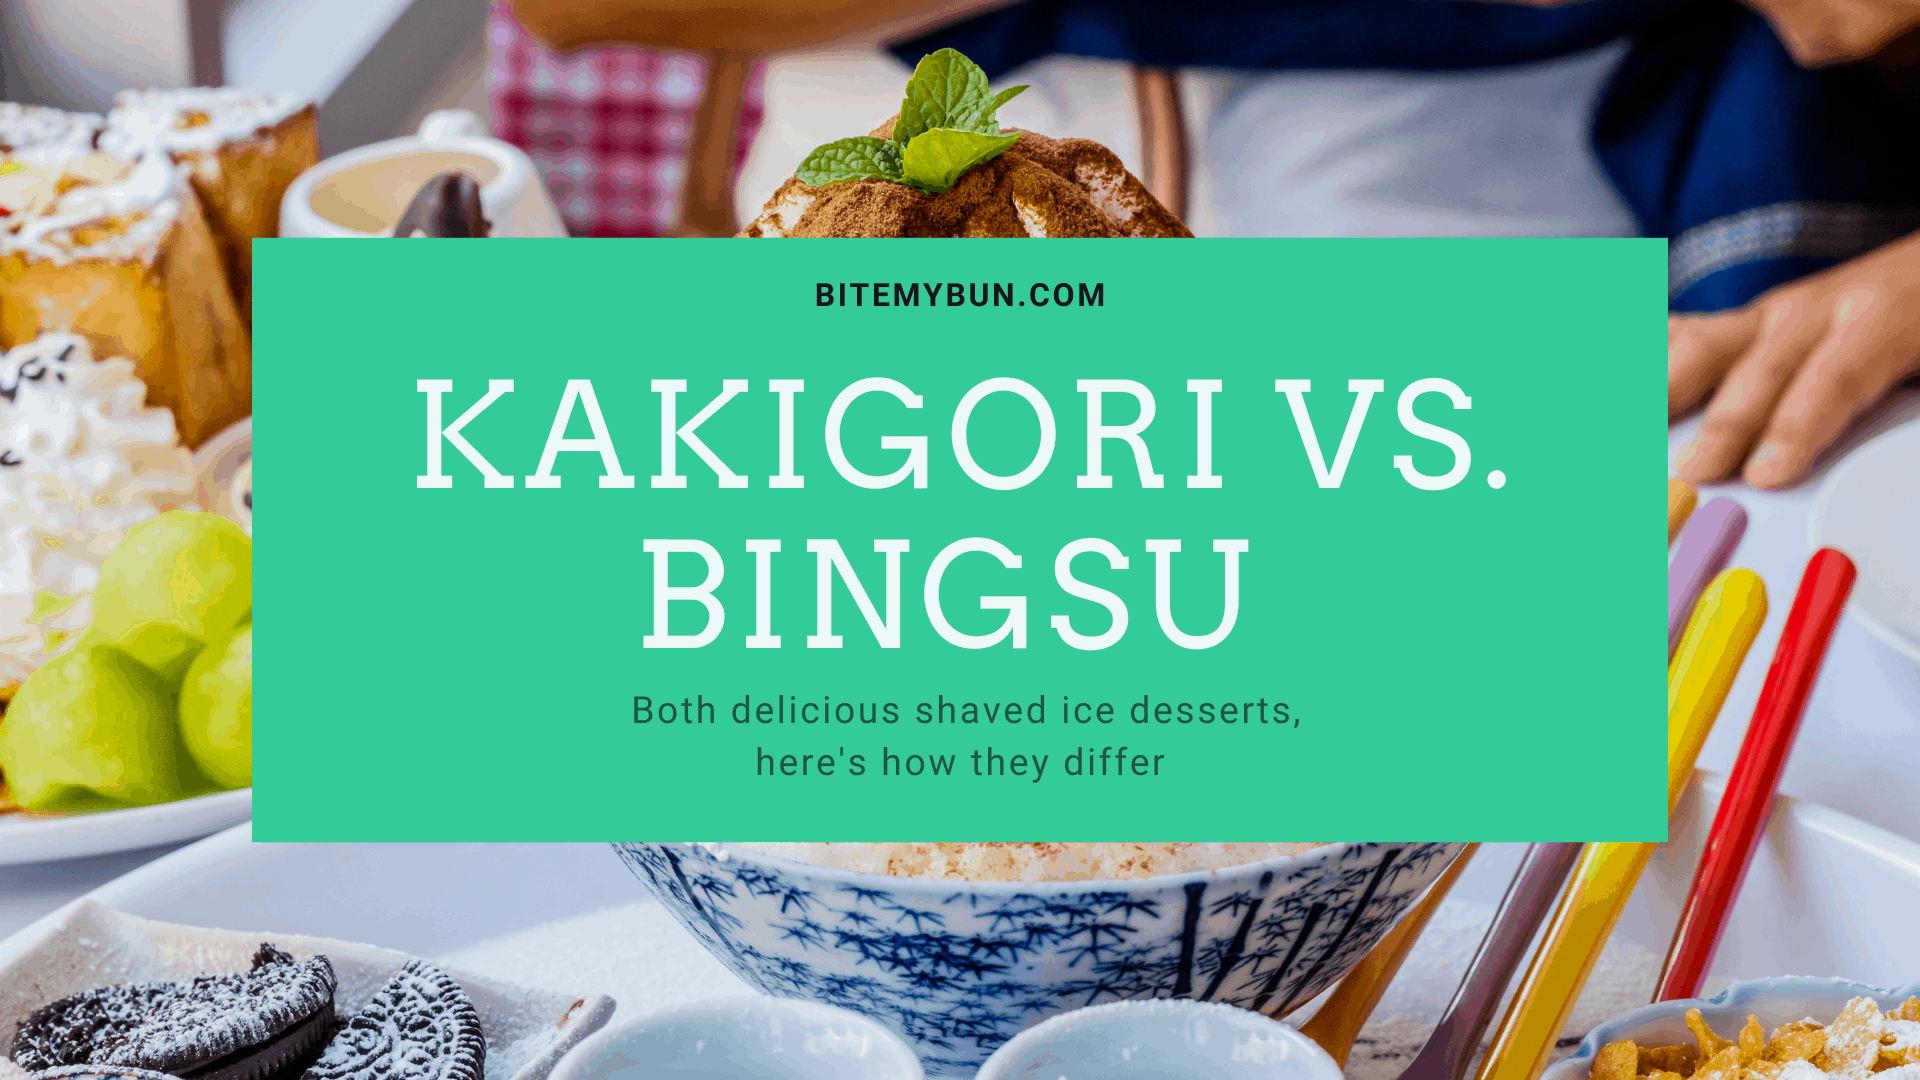 คากิโกริ vs. บิงซู | น้ำแข็งไสอร่อยทั้งคู่ ต่างกันยังไง